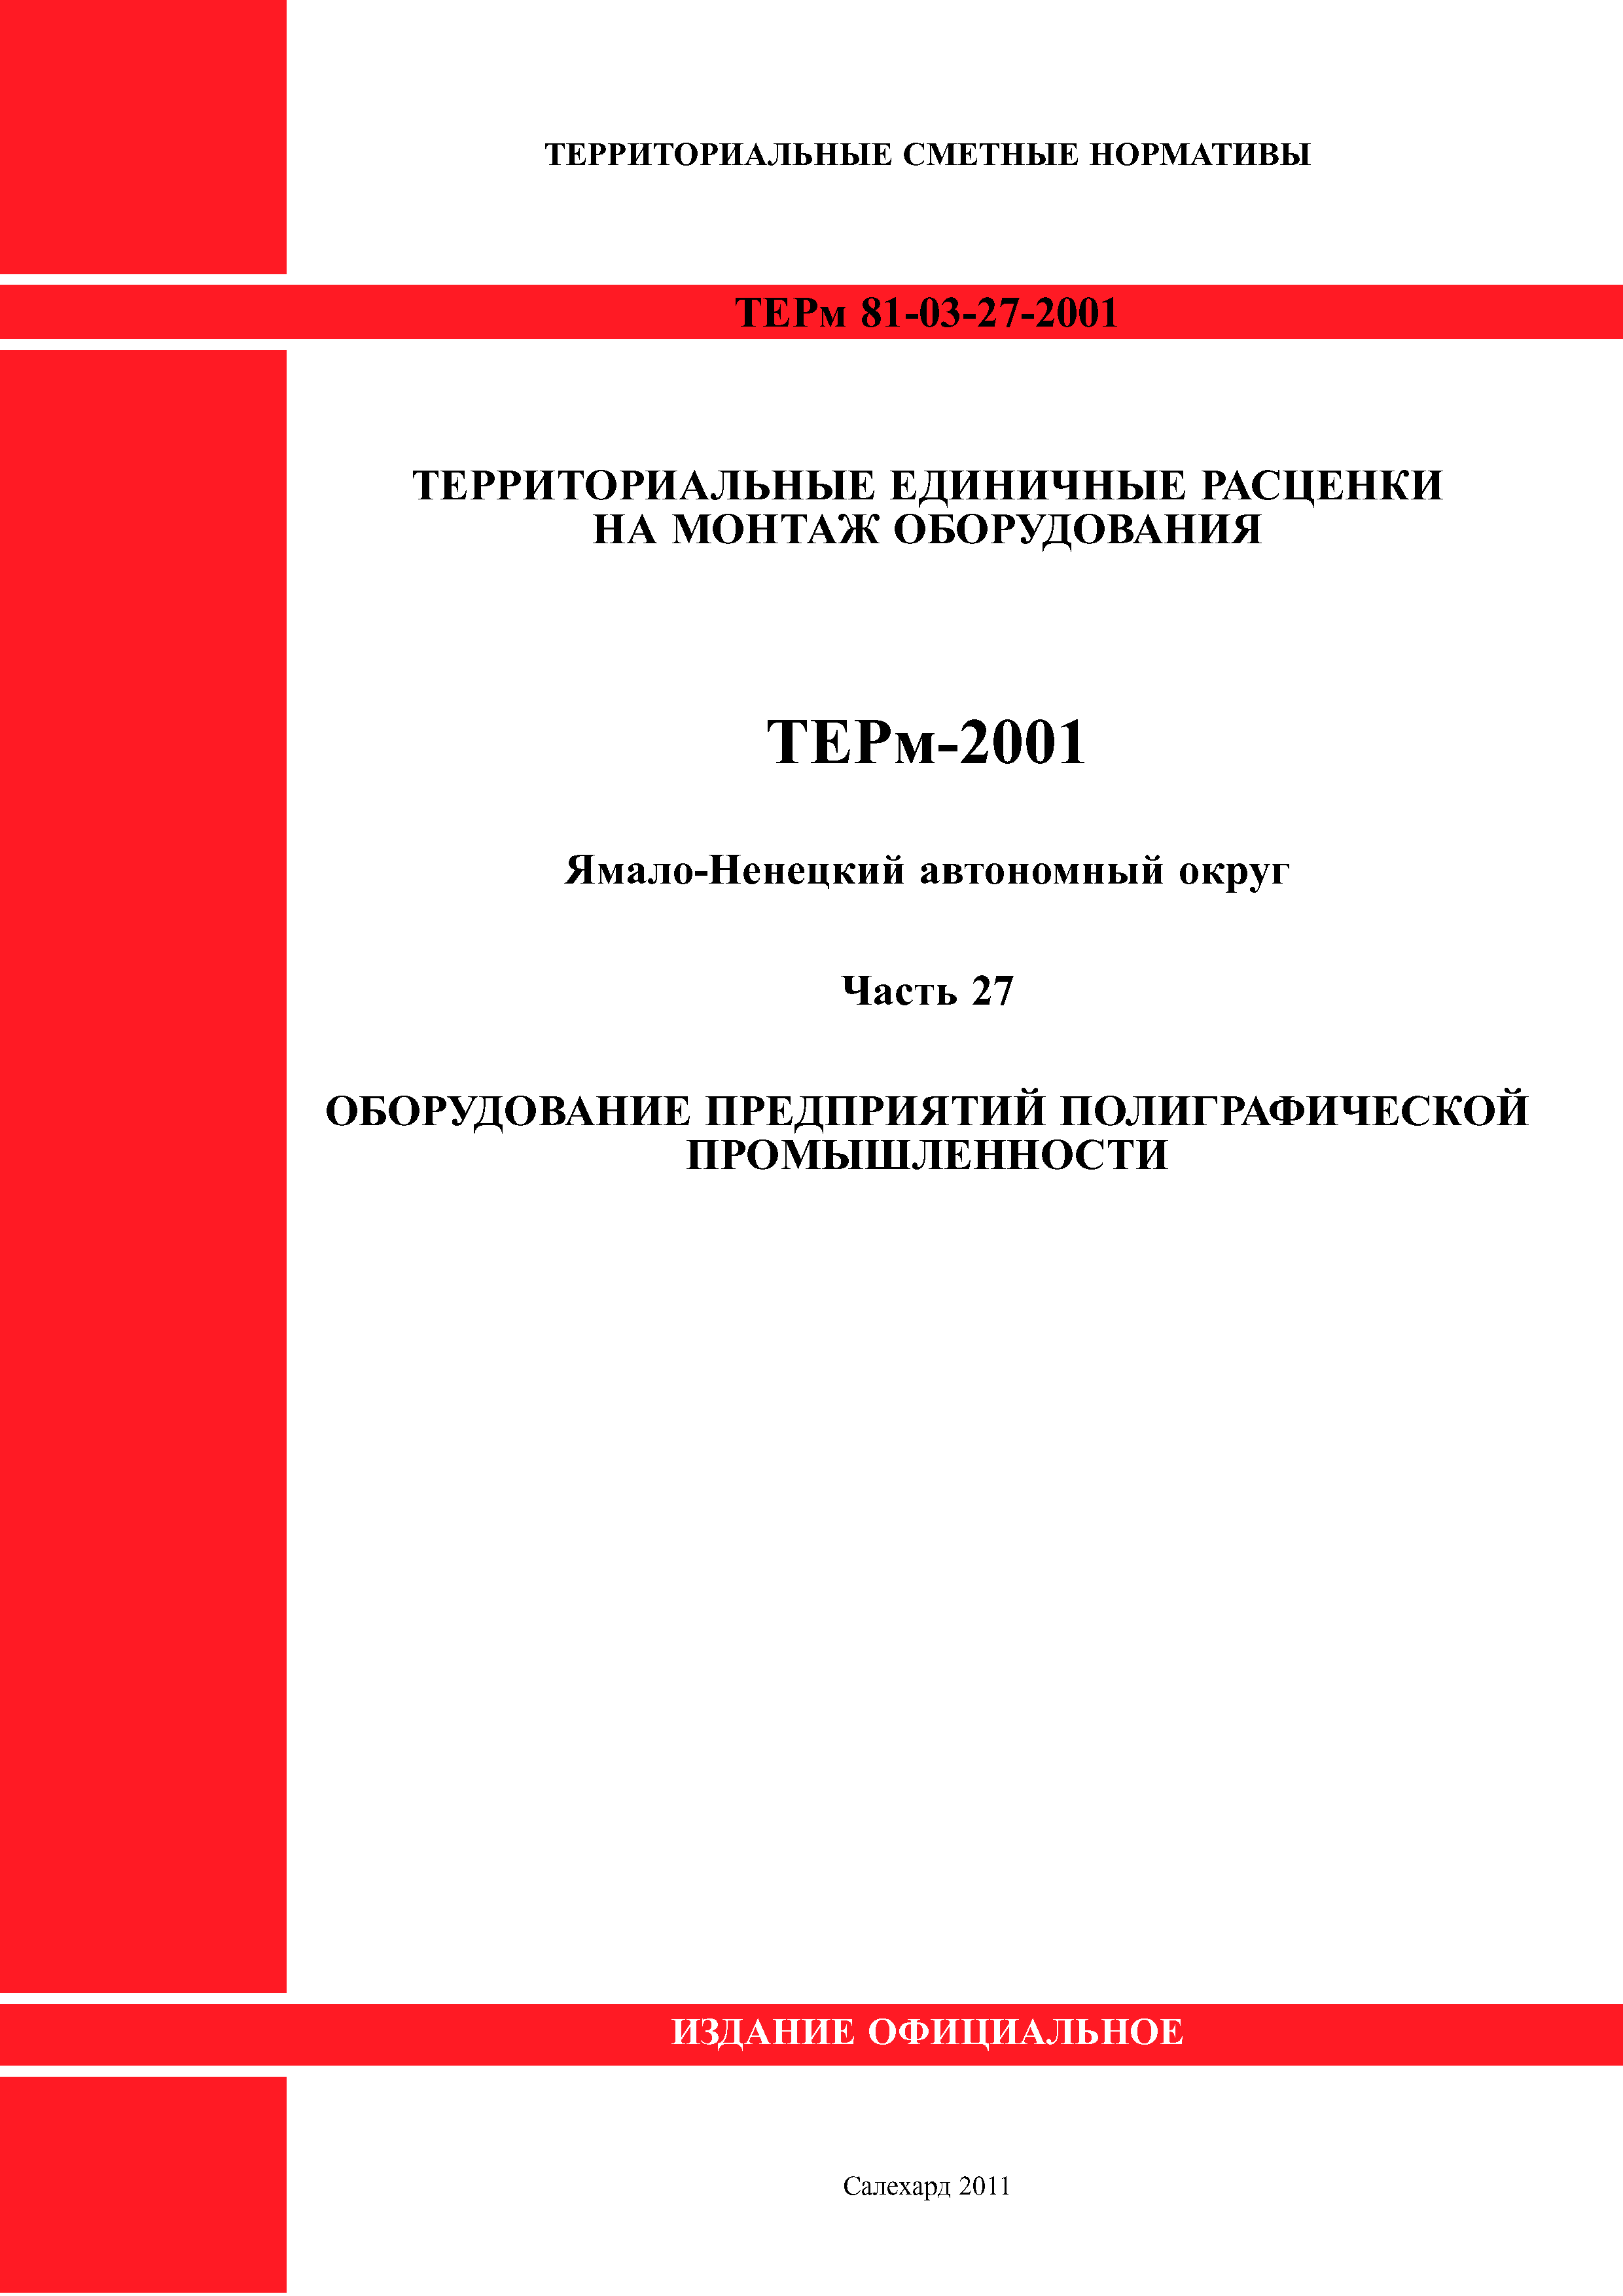 ТЕРм Ямало-Ненецкий автономный округ 27-2001